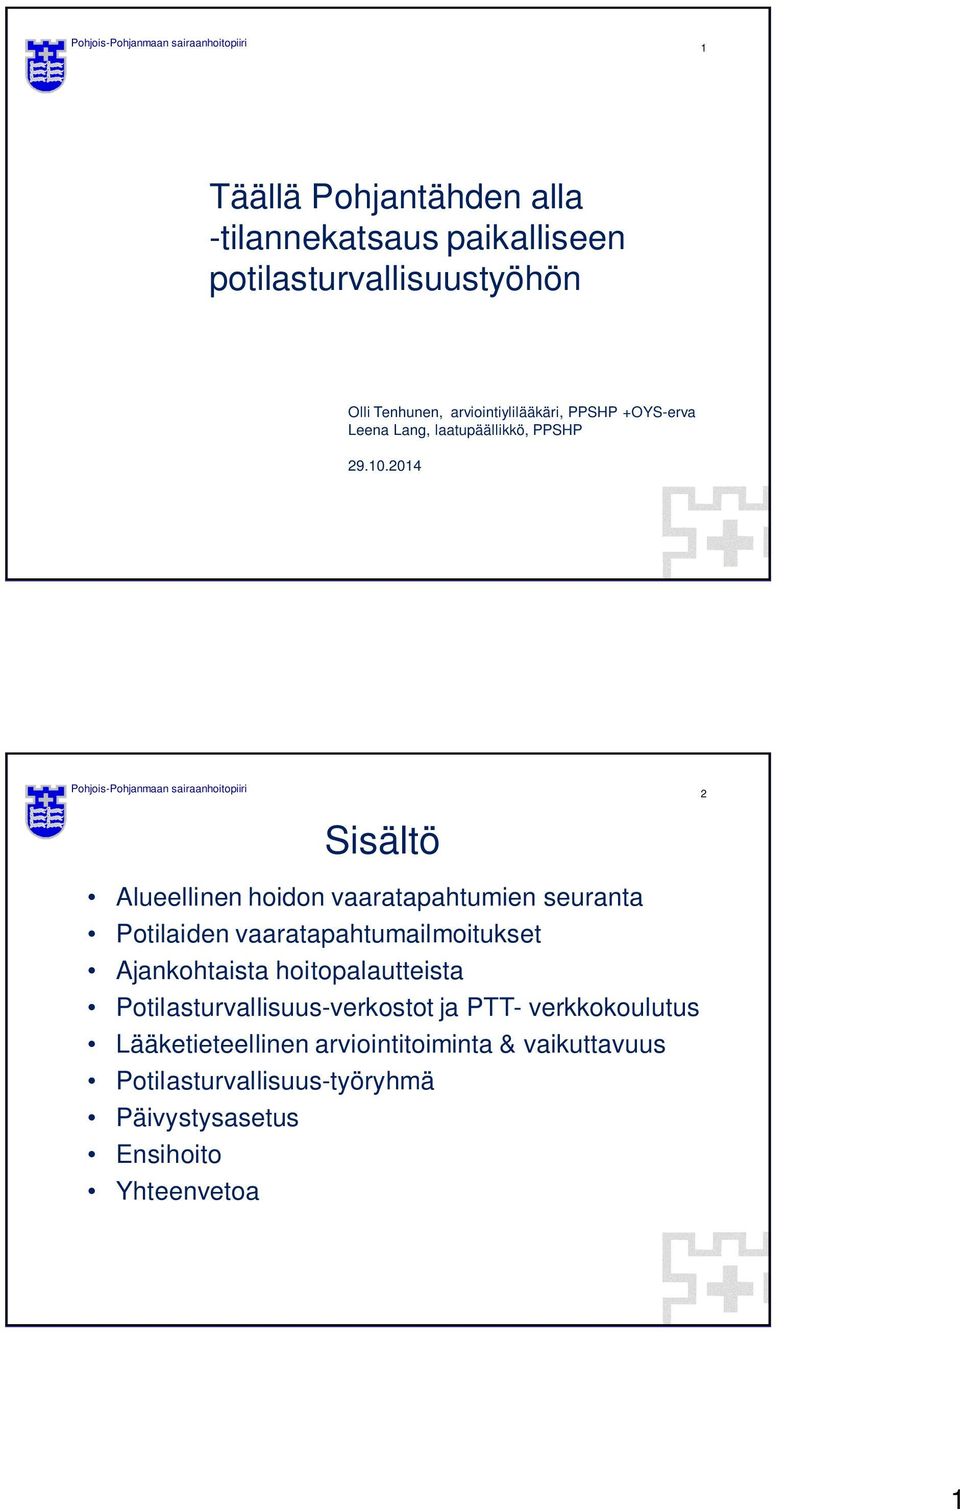 2014 Pohjois-Pohjanmaan sairaanhoitopiiri Sisältö Alueellinen hoidon vaaratapahtumien seuranta Potilaiden vaaratapahtumailmoitukset